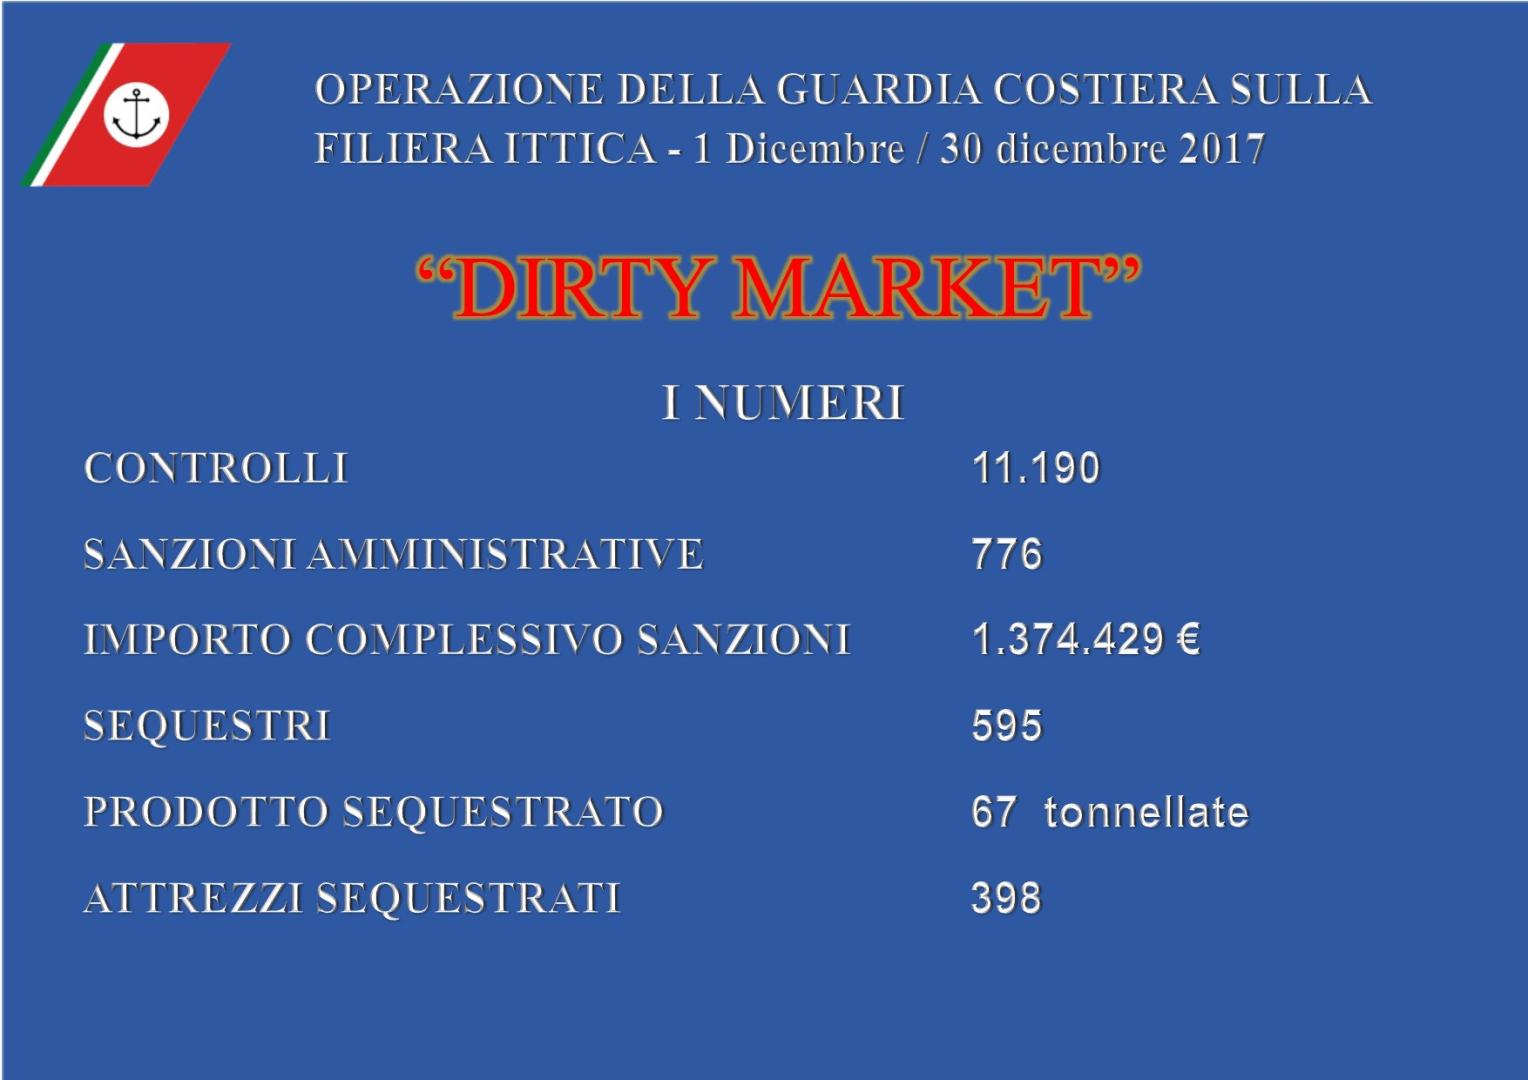 I numeri dell’operazione “DIRTY MARKET” della Guardia Costiera